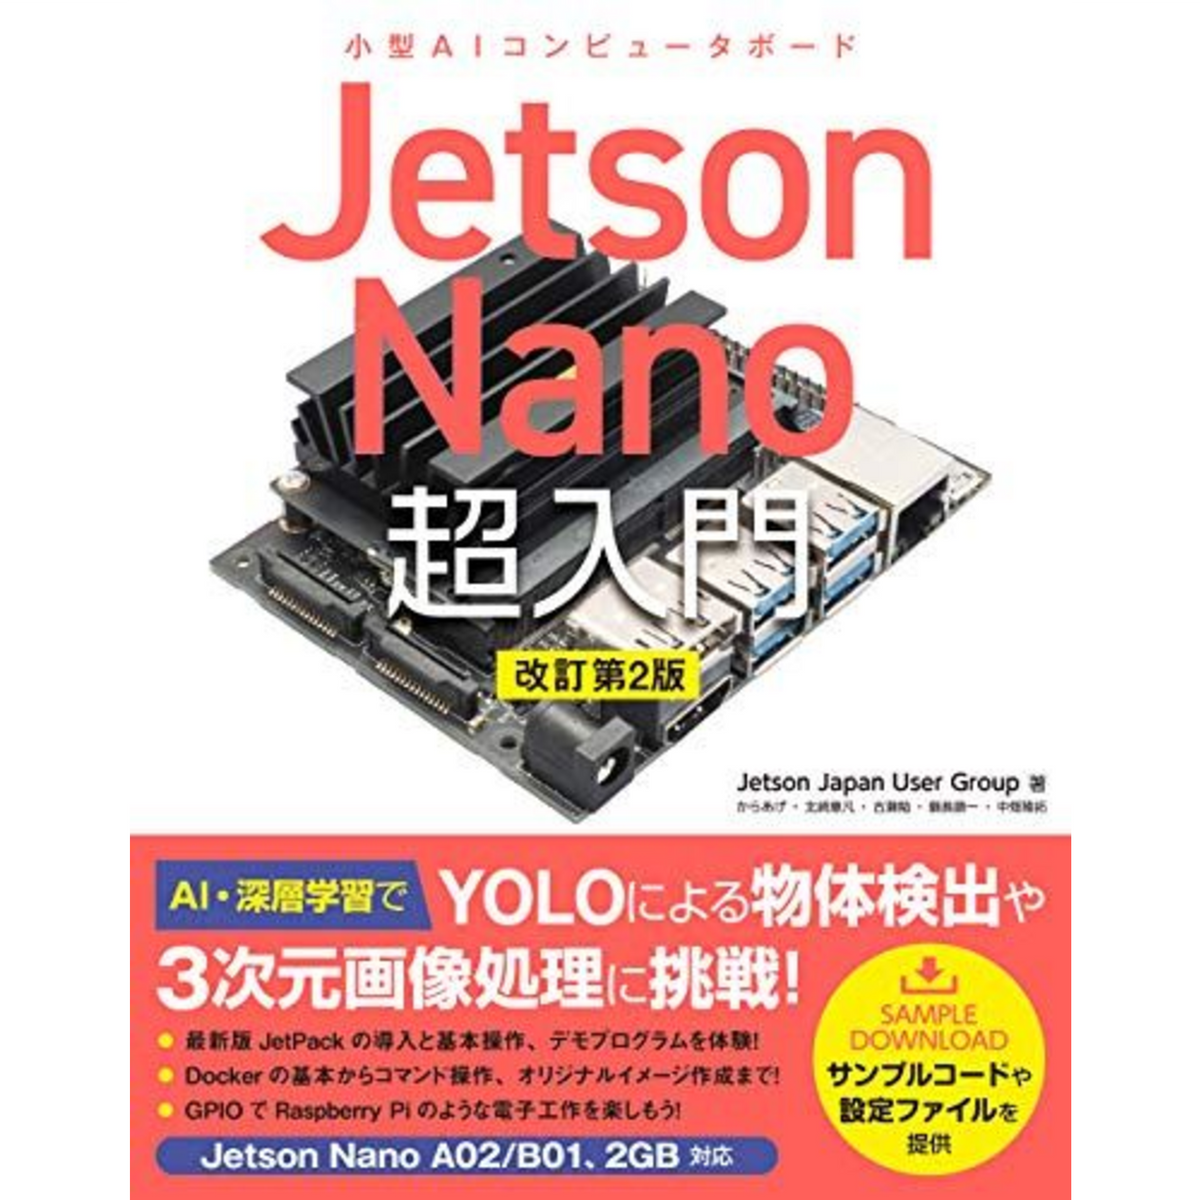 Jetson Nano 超入門 改訂第2版 — スイッチサイエンス